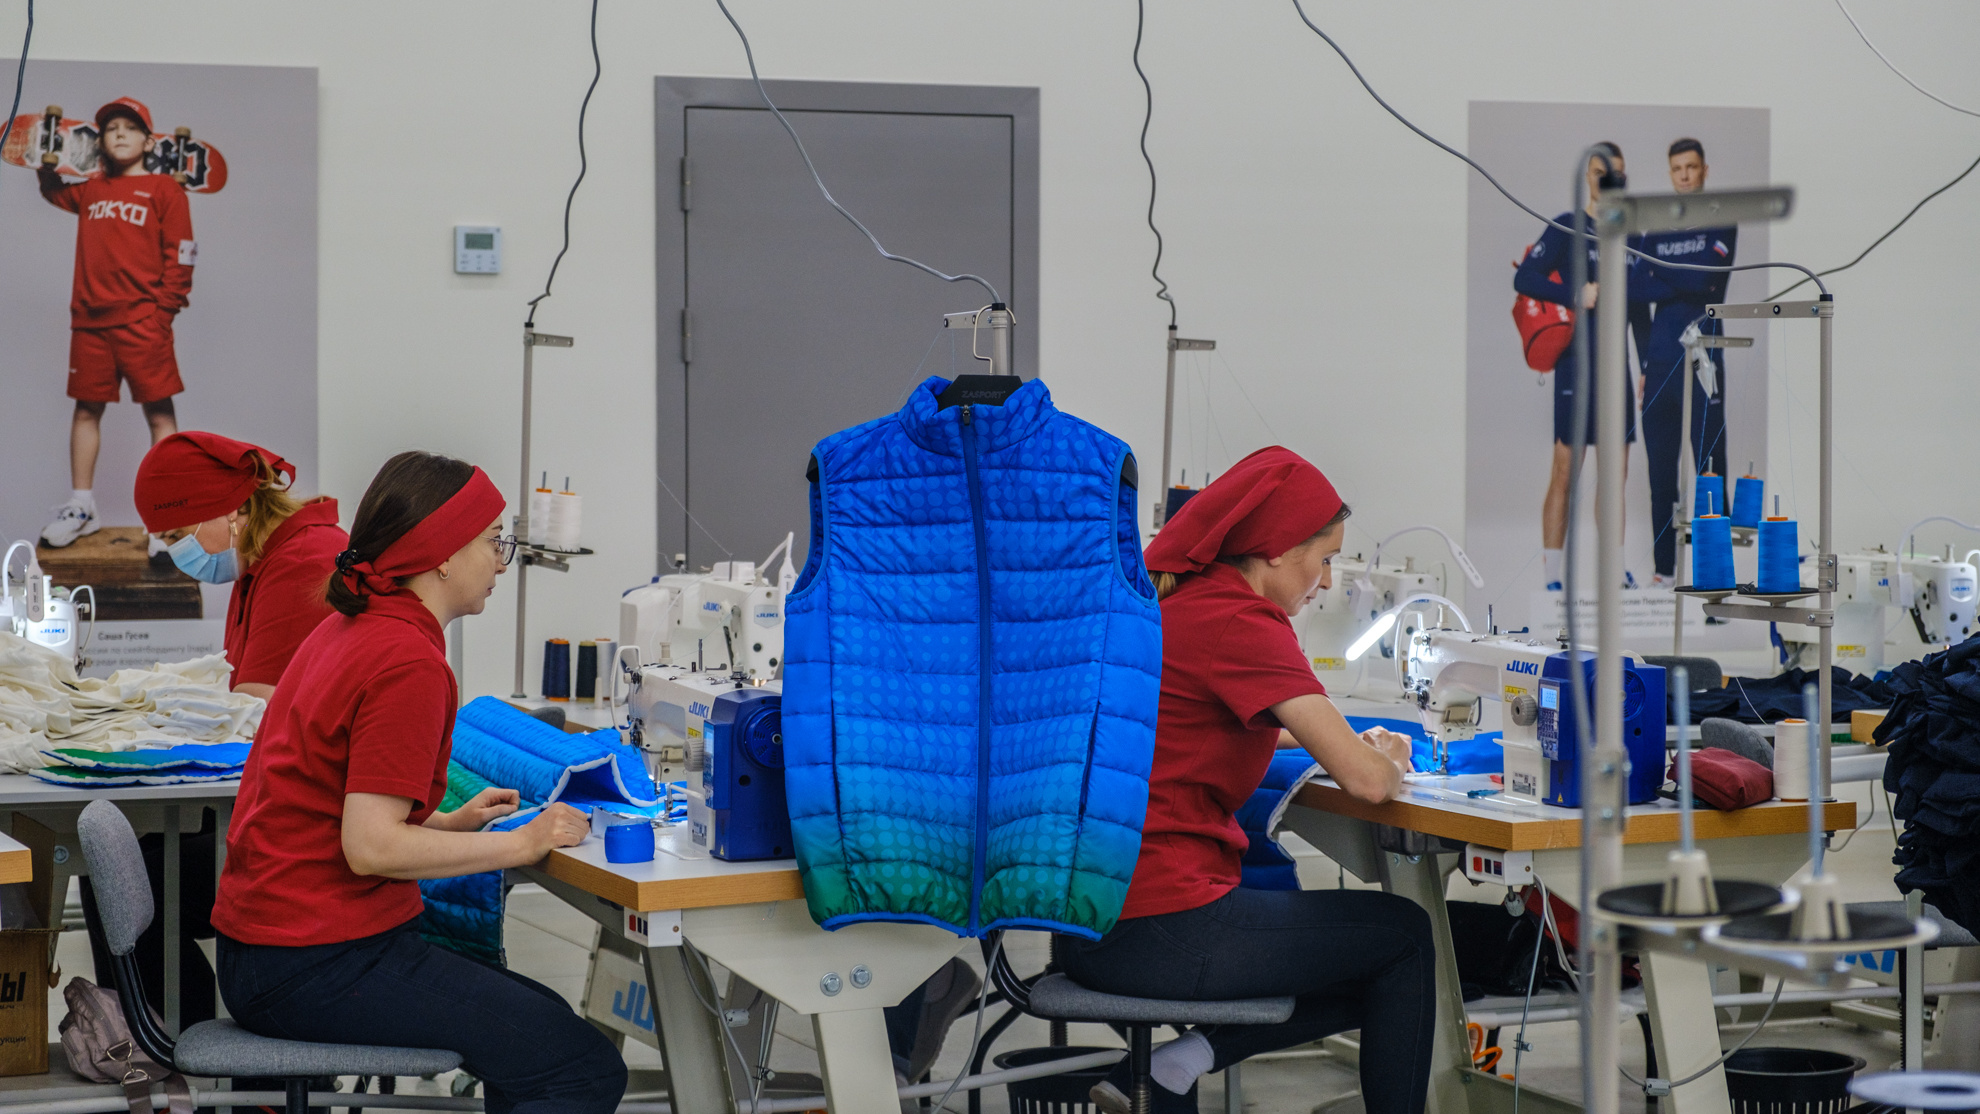 За 44 тысячи в месяц: как на башкирской фабрике шьют одежду для бренда, который основала дочь генерала ФСБ